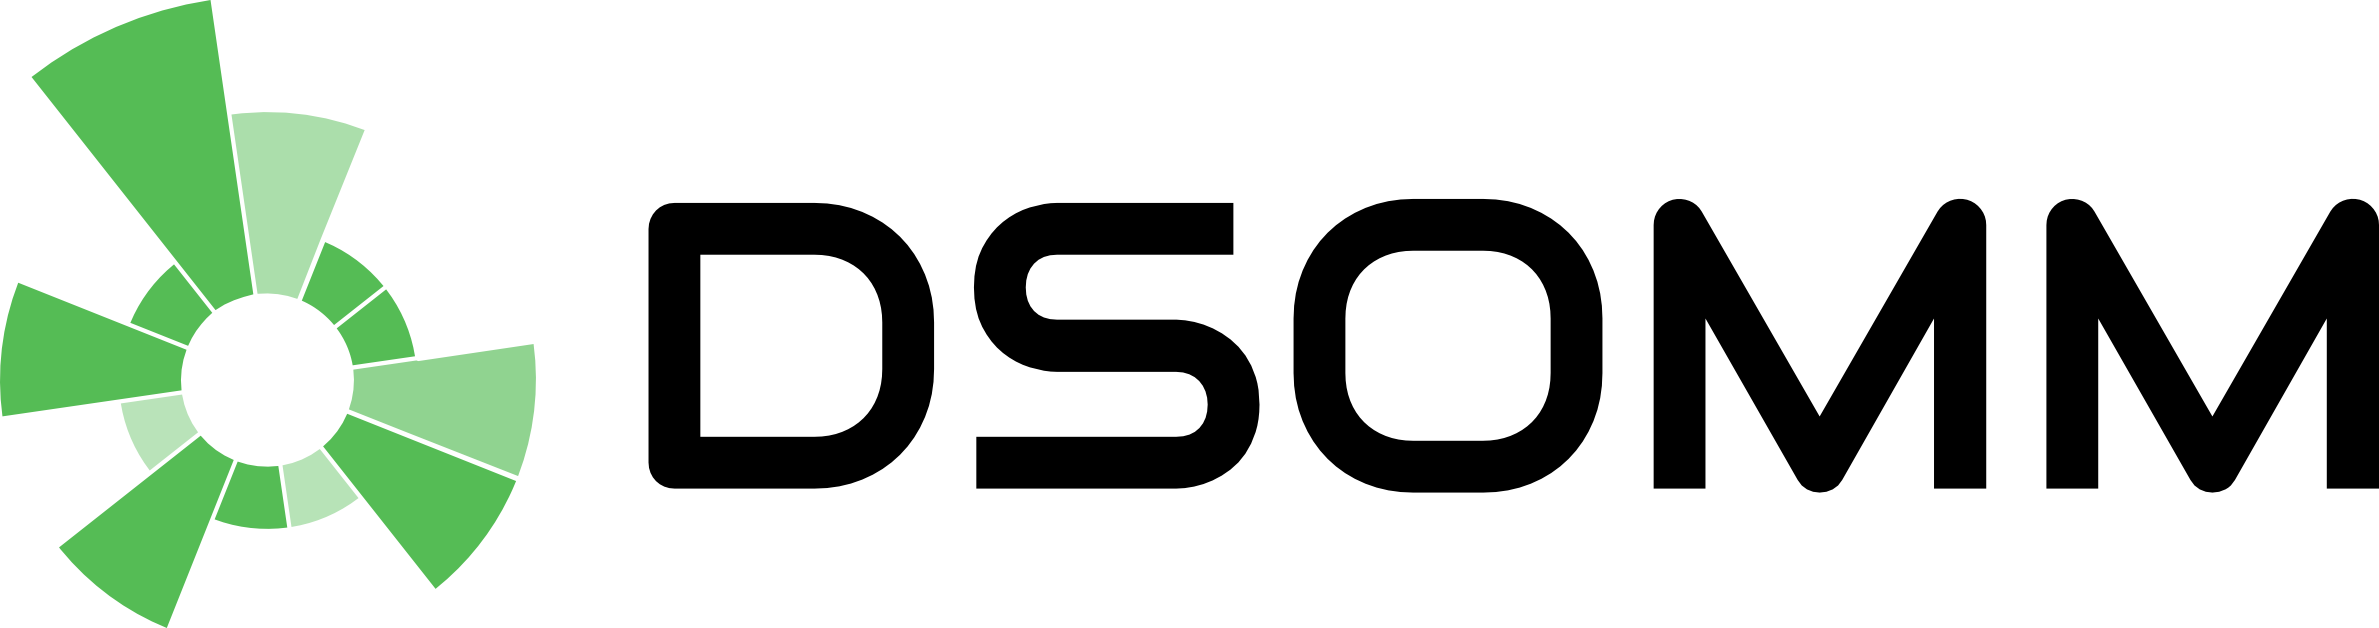 OWASP DSOMM Logo